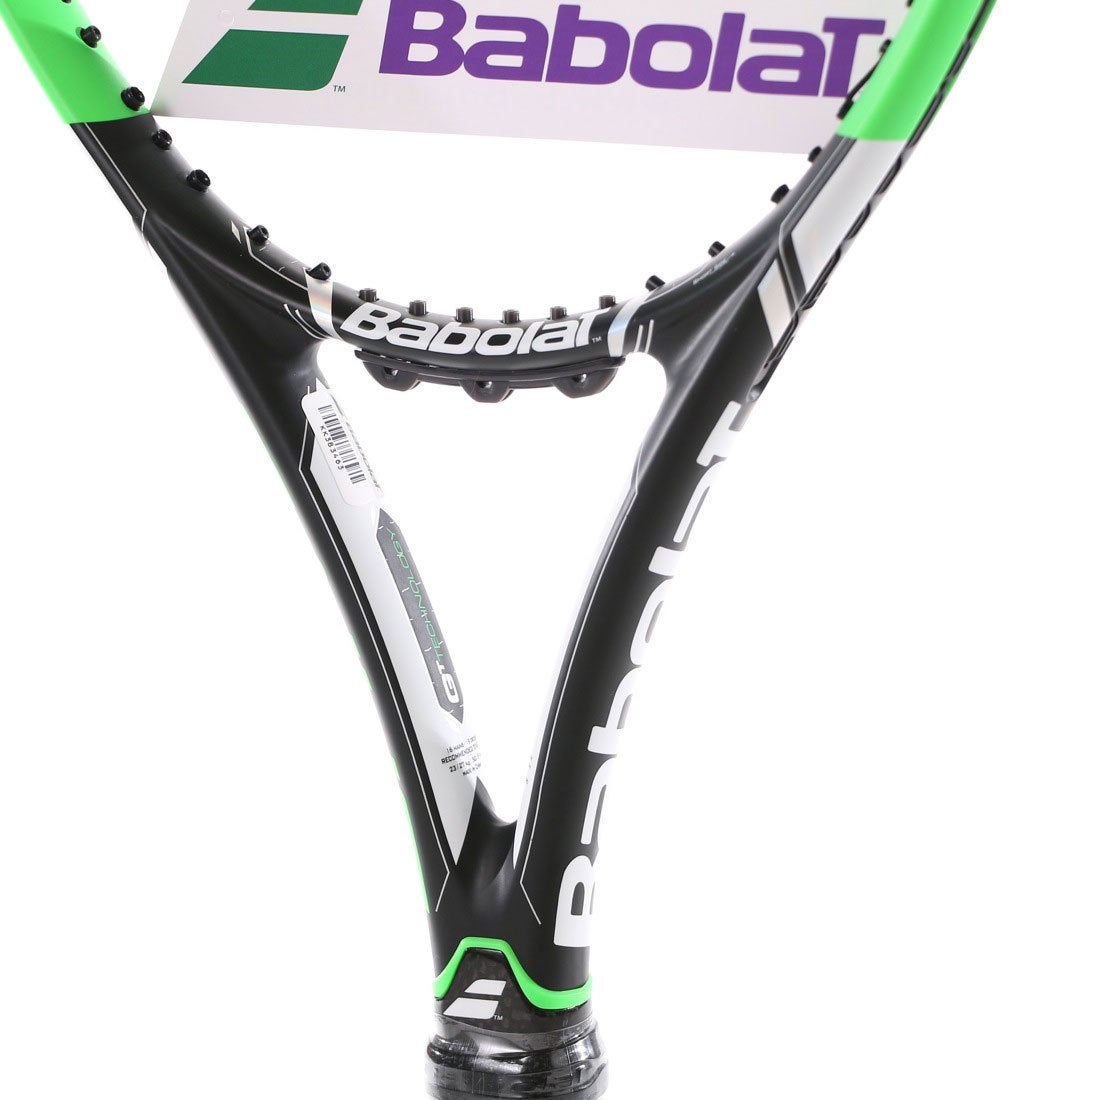 バボラ Babolat 硬式テニスラケット ピュア ドライブ ウィンブルドン